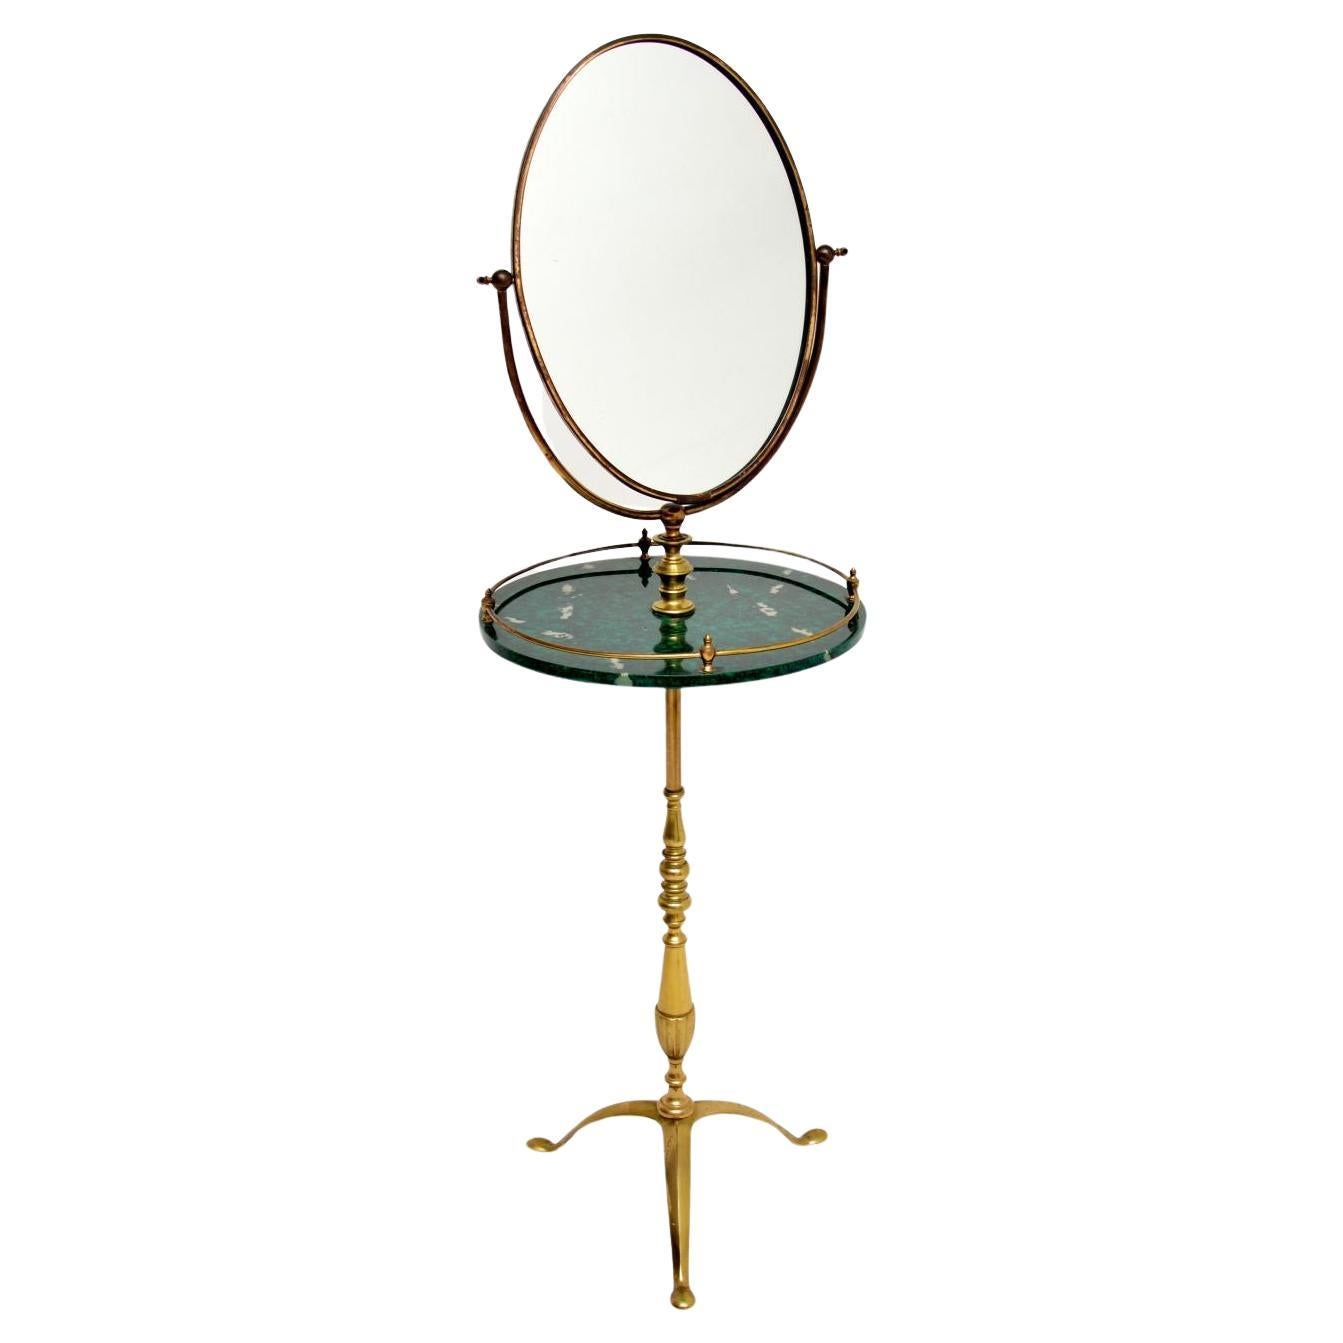 Une élégante et très rare table de toilette vintage en laiton avec miroir par Peerage. Il a été fabriqué en Angleterre, il date des années 1960.

Il est magnifiquement réalisé en laiton massif, avec une jolie table centrale en fausse écaille de